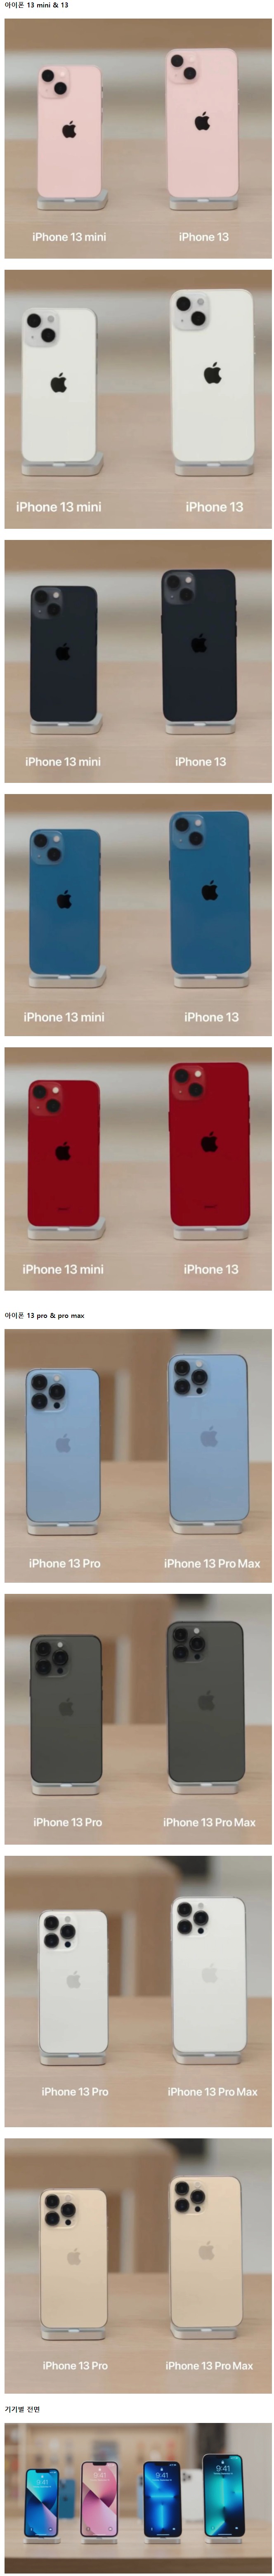 애플이 공개한 아이폰 13 시리즈 실물